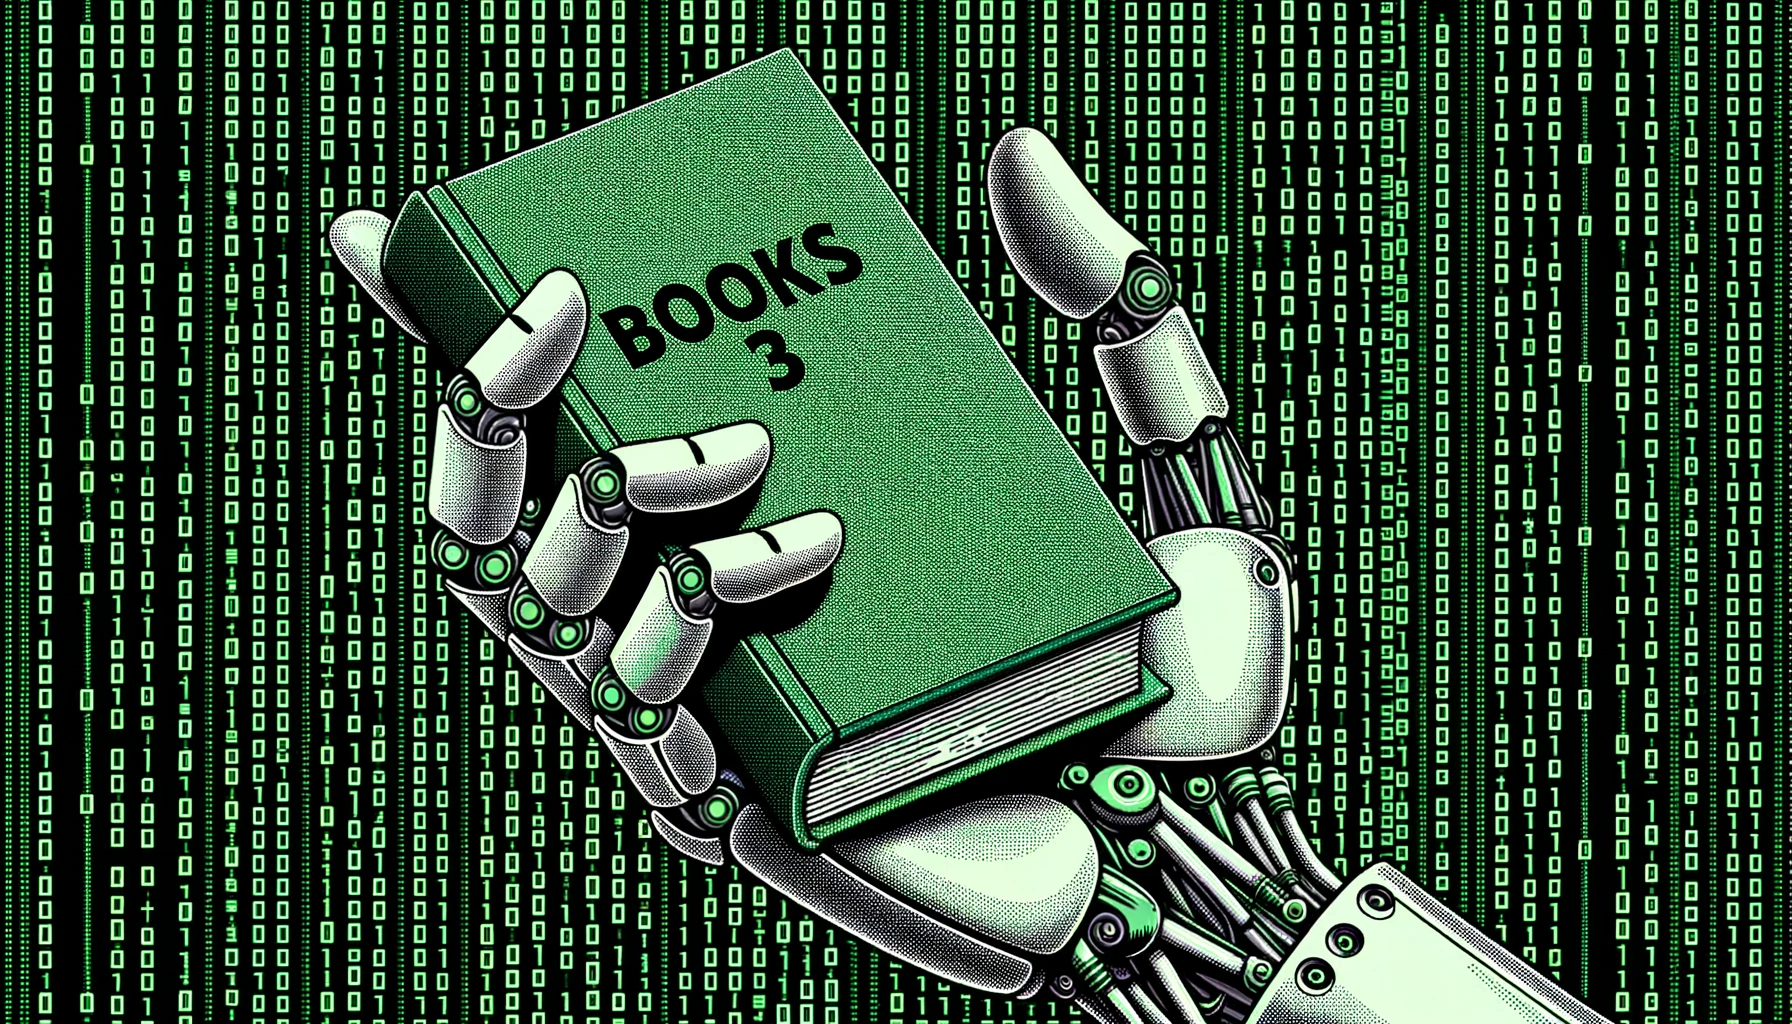 Weitere Bestsellerautoren verklagen Big AI wegen möglicher KI-Urheberrechtsverletzung